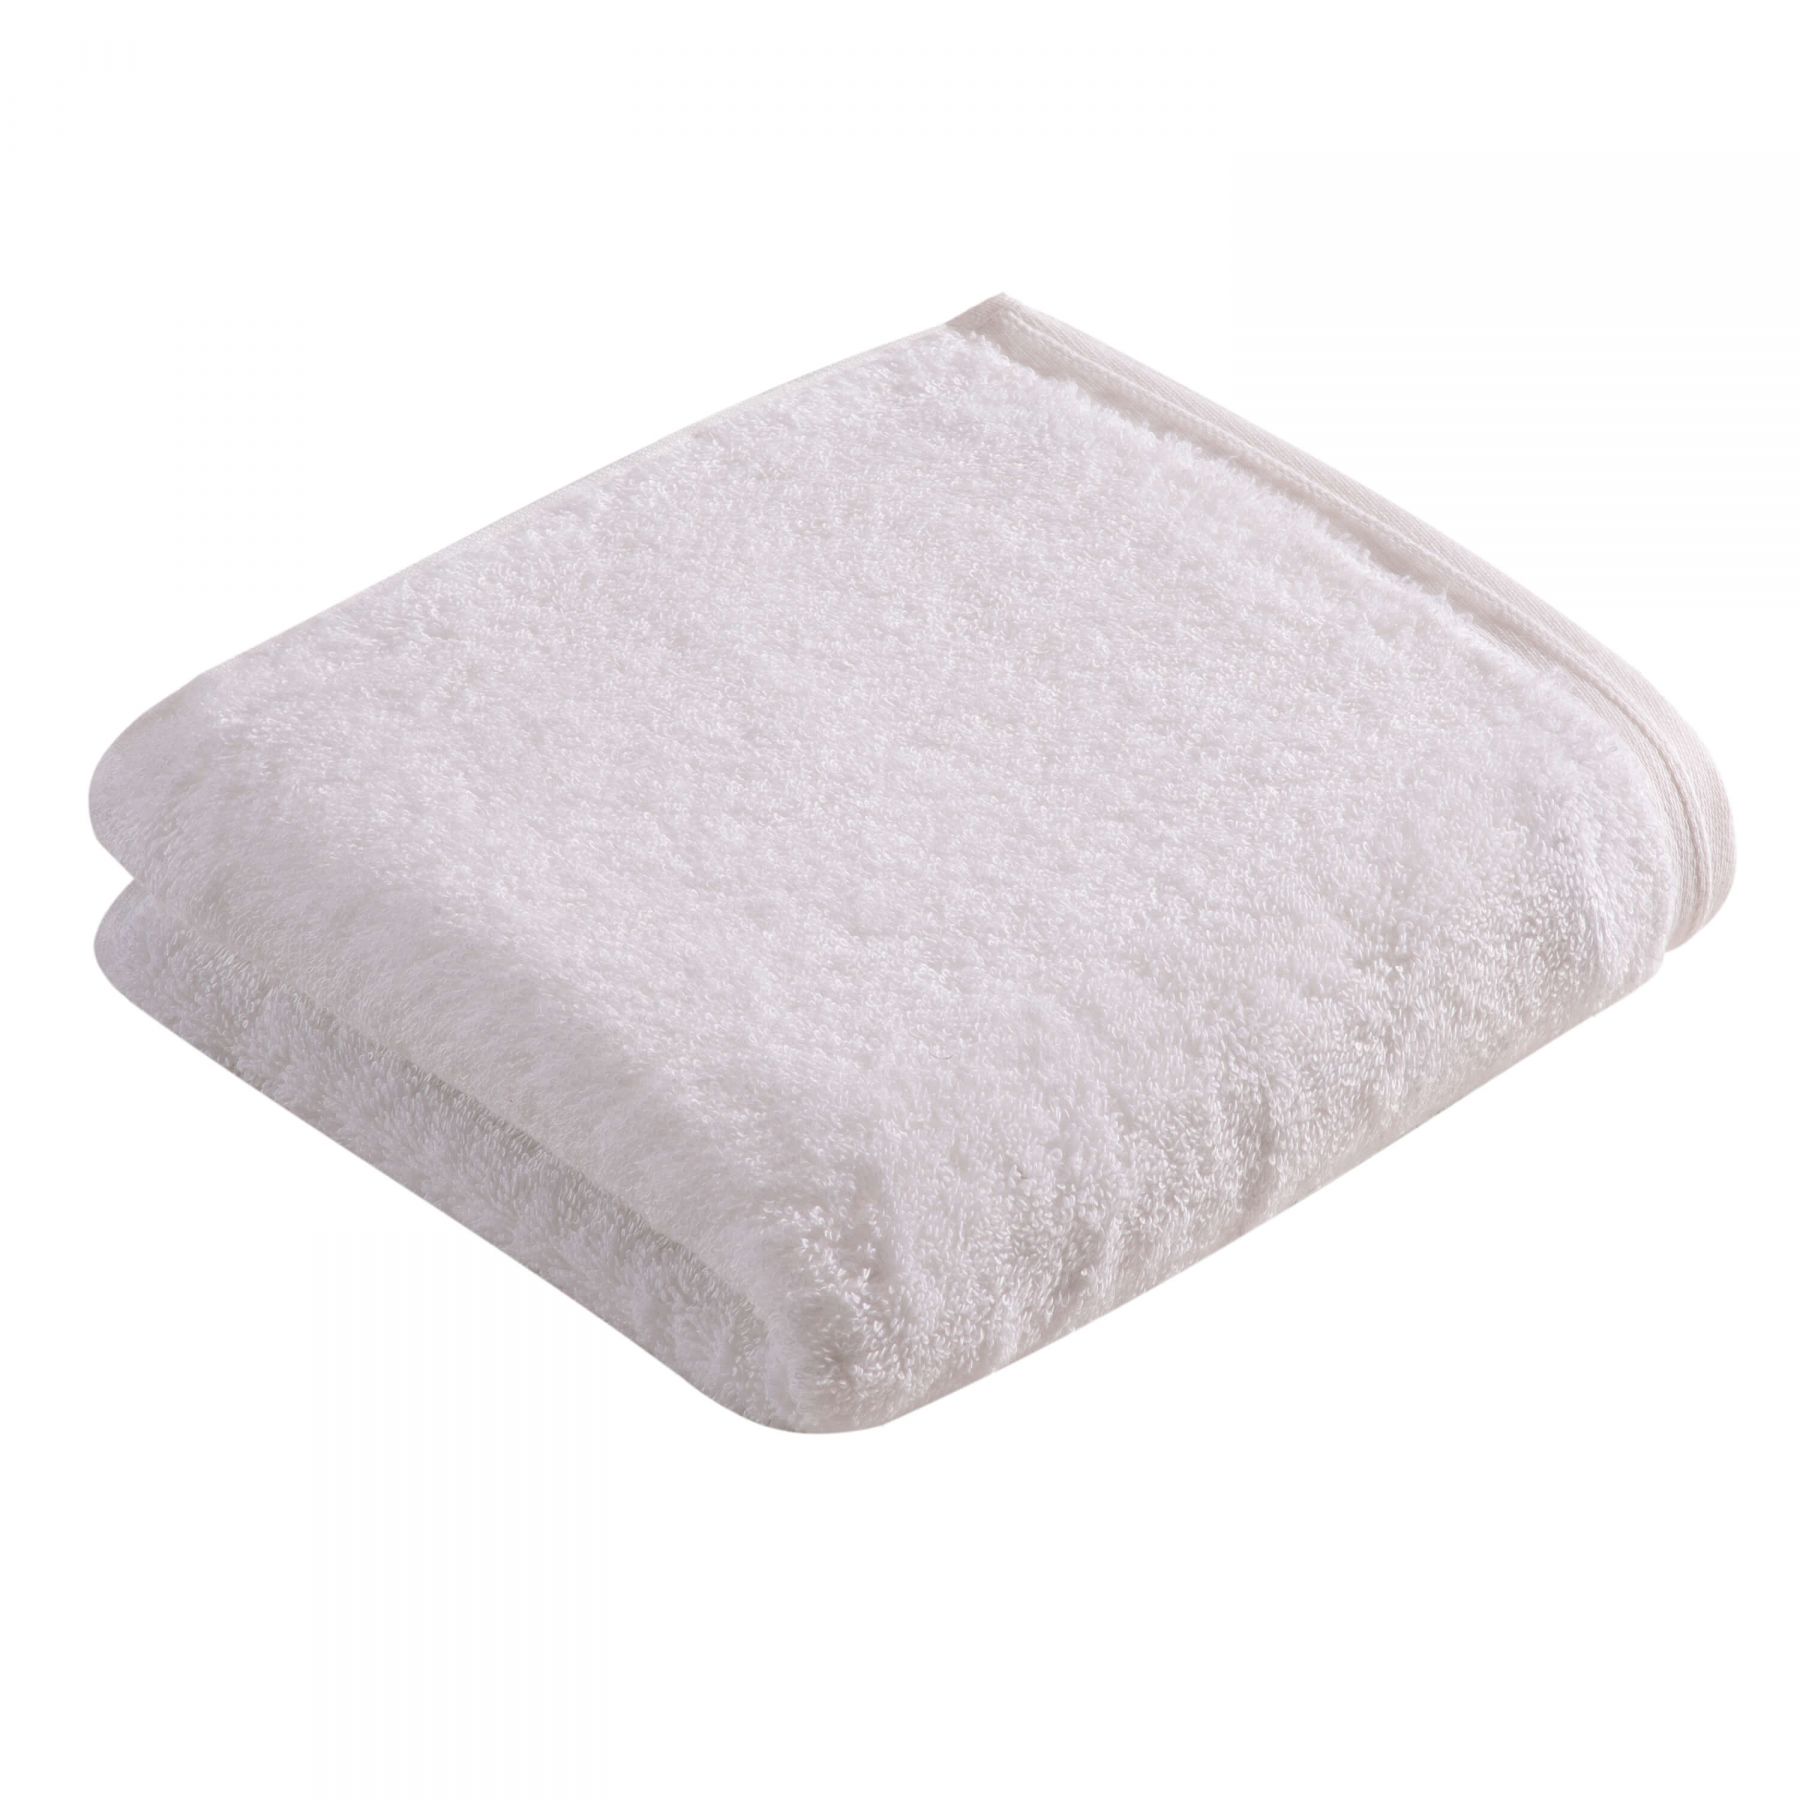 Элитное полотенце Vegan Life White ☞ Размер: 100 x 150 см